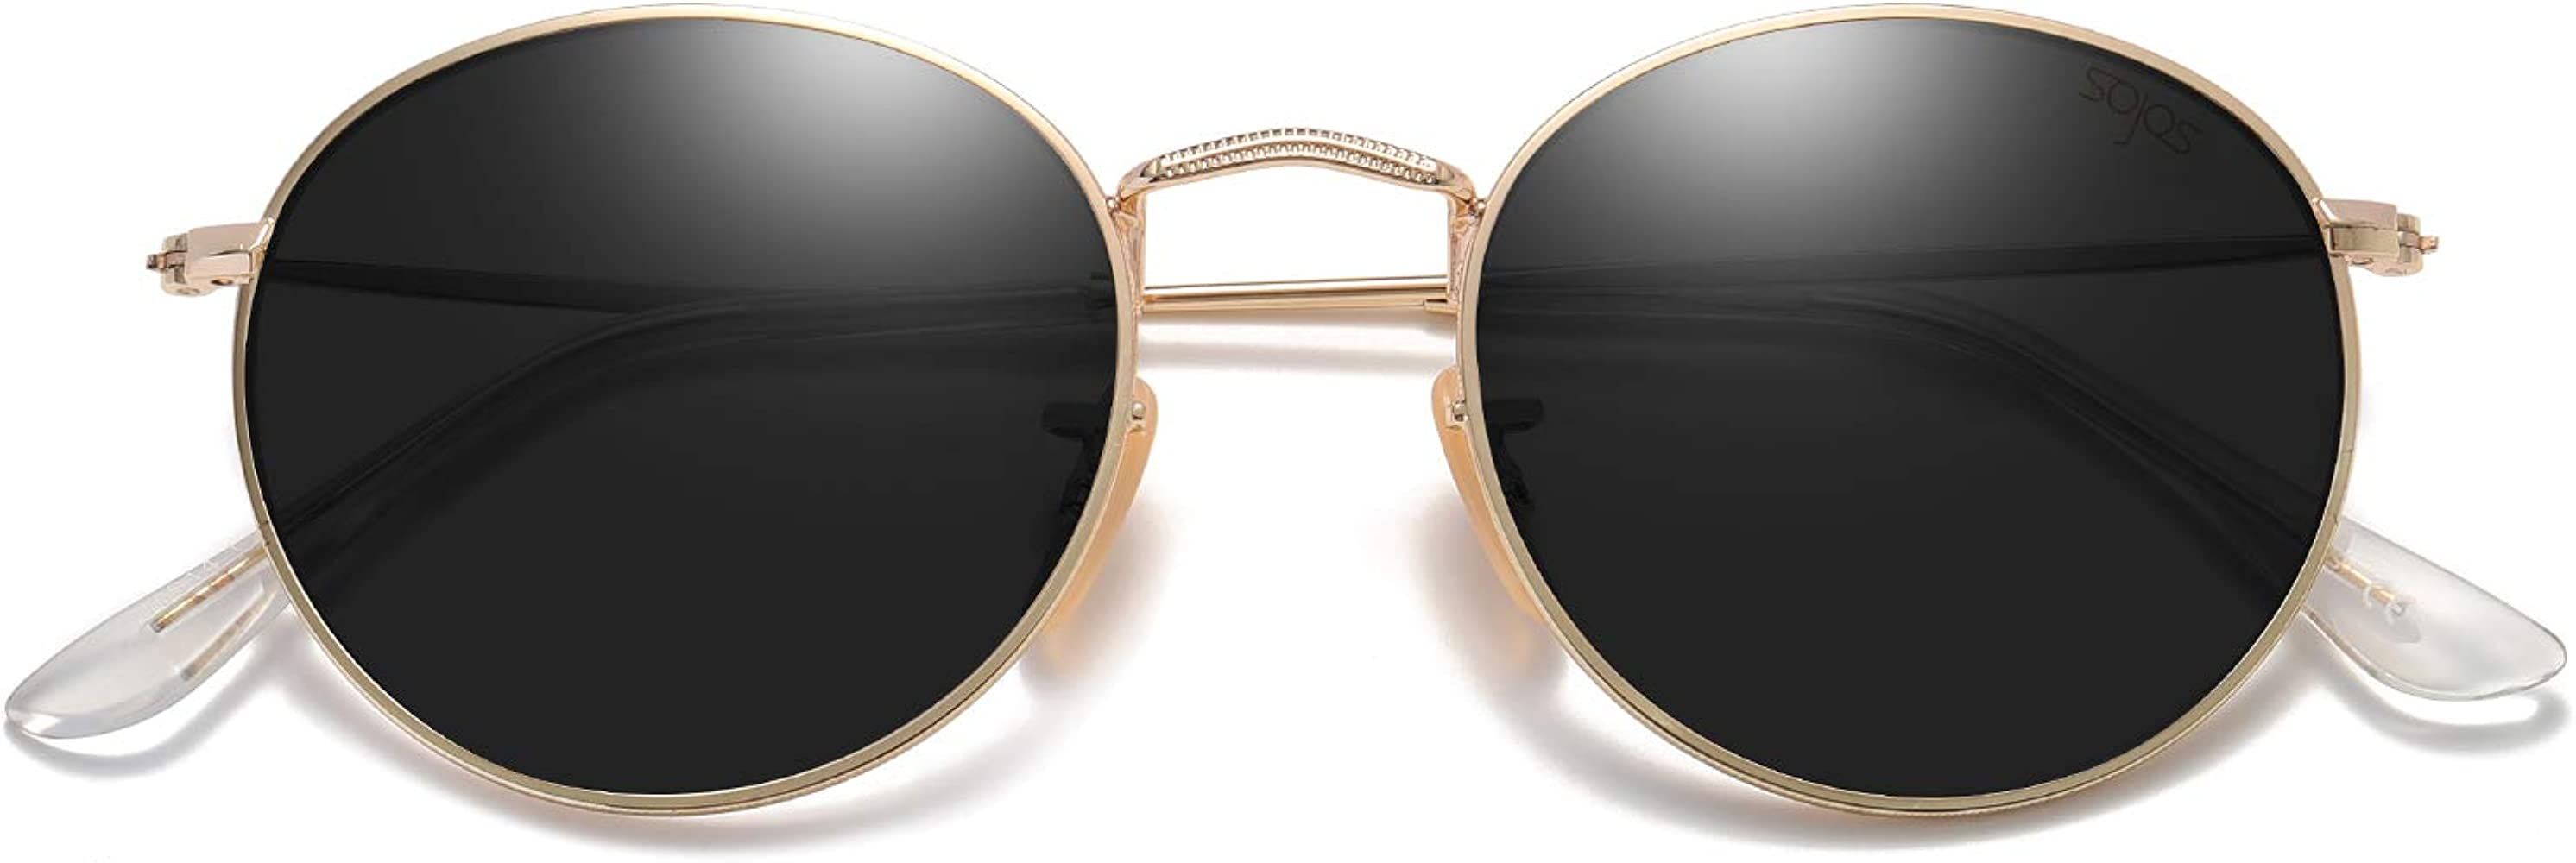 SOJOS Classic Small Round Polarized Sunglasses for Women Men Vintage Retro Frame SJ1014 | Amazon (US)